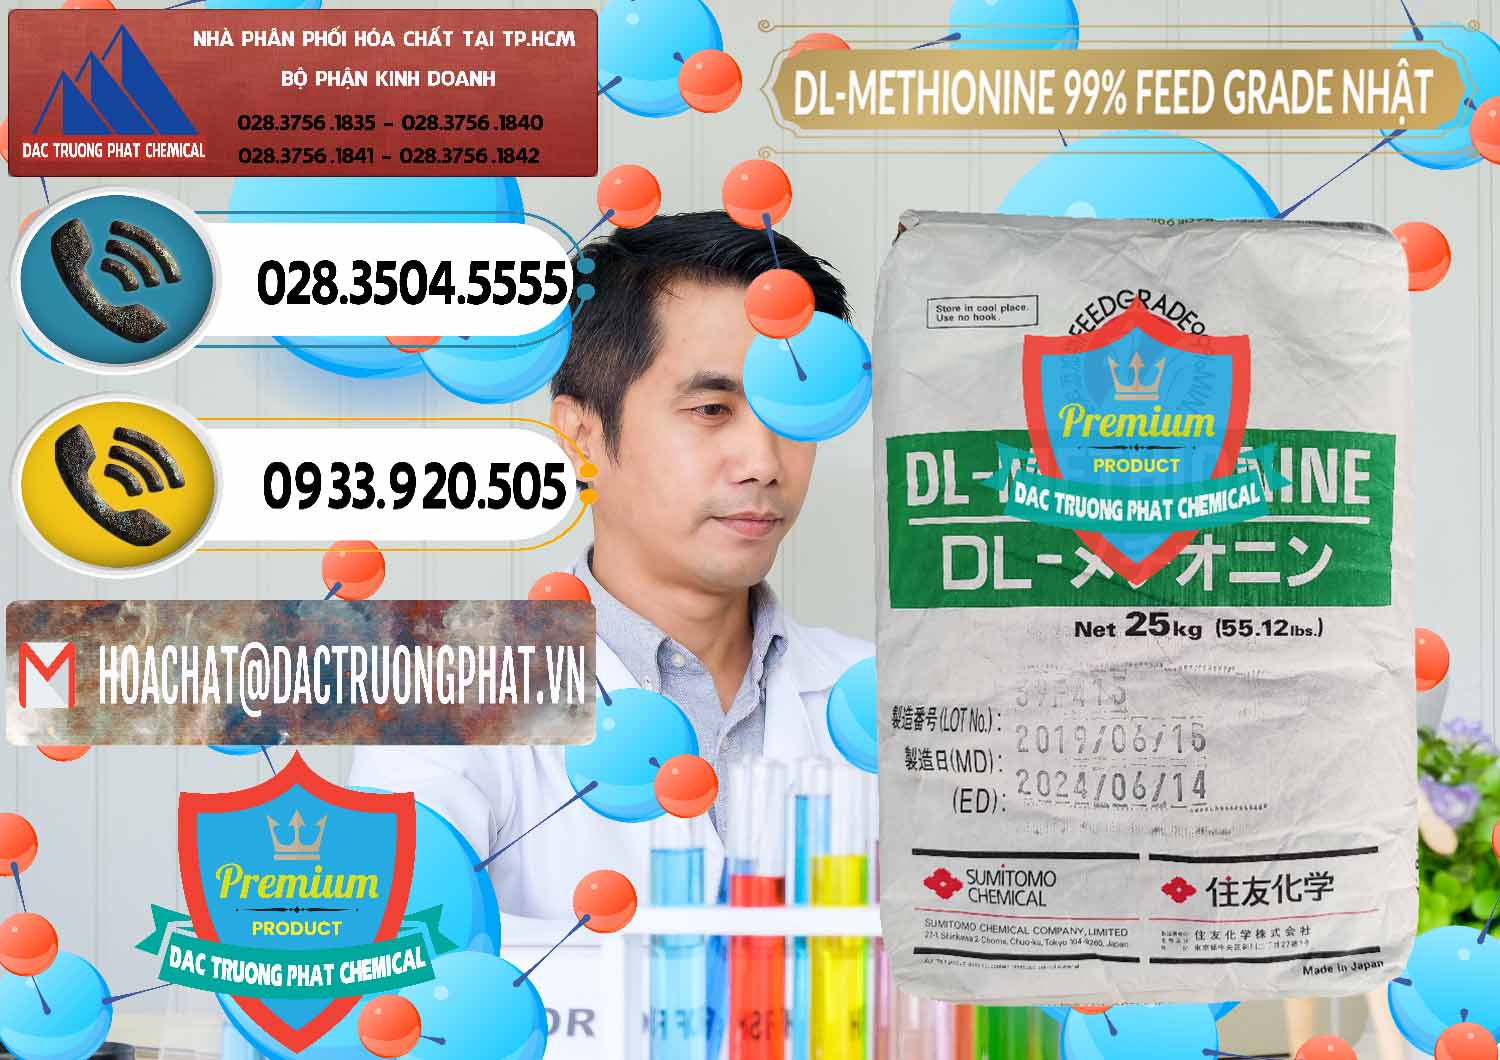 Công ty kinh doanh và bán DL-Methionine - C5H11NO2S Feed Grade Sumitomo Nhật Bản Japan - 0313 - Đơn vị cung cấp và phân phối hóa chất tại TP.HCM - hoachatdetnhuom.vn